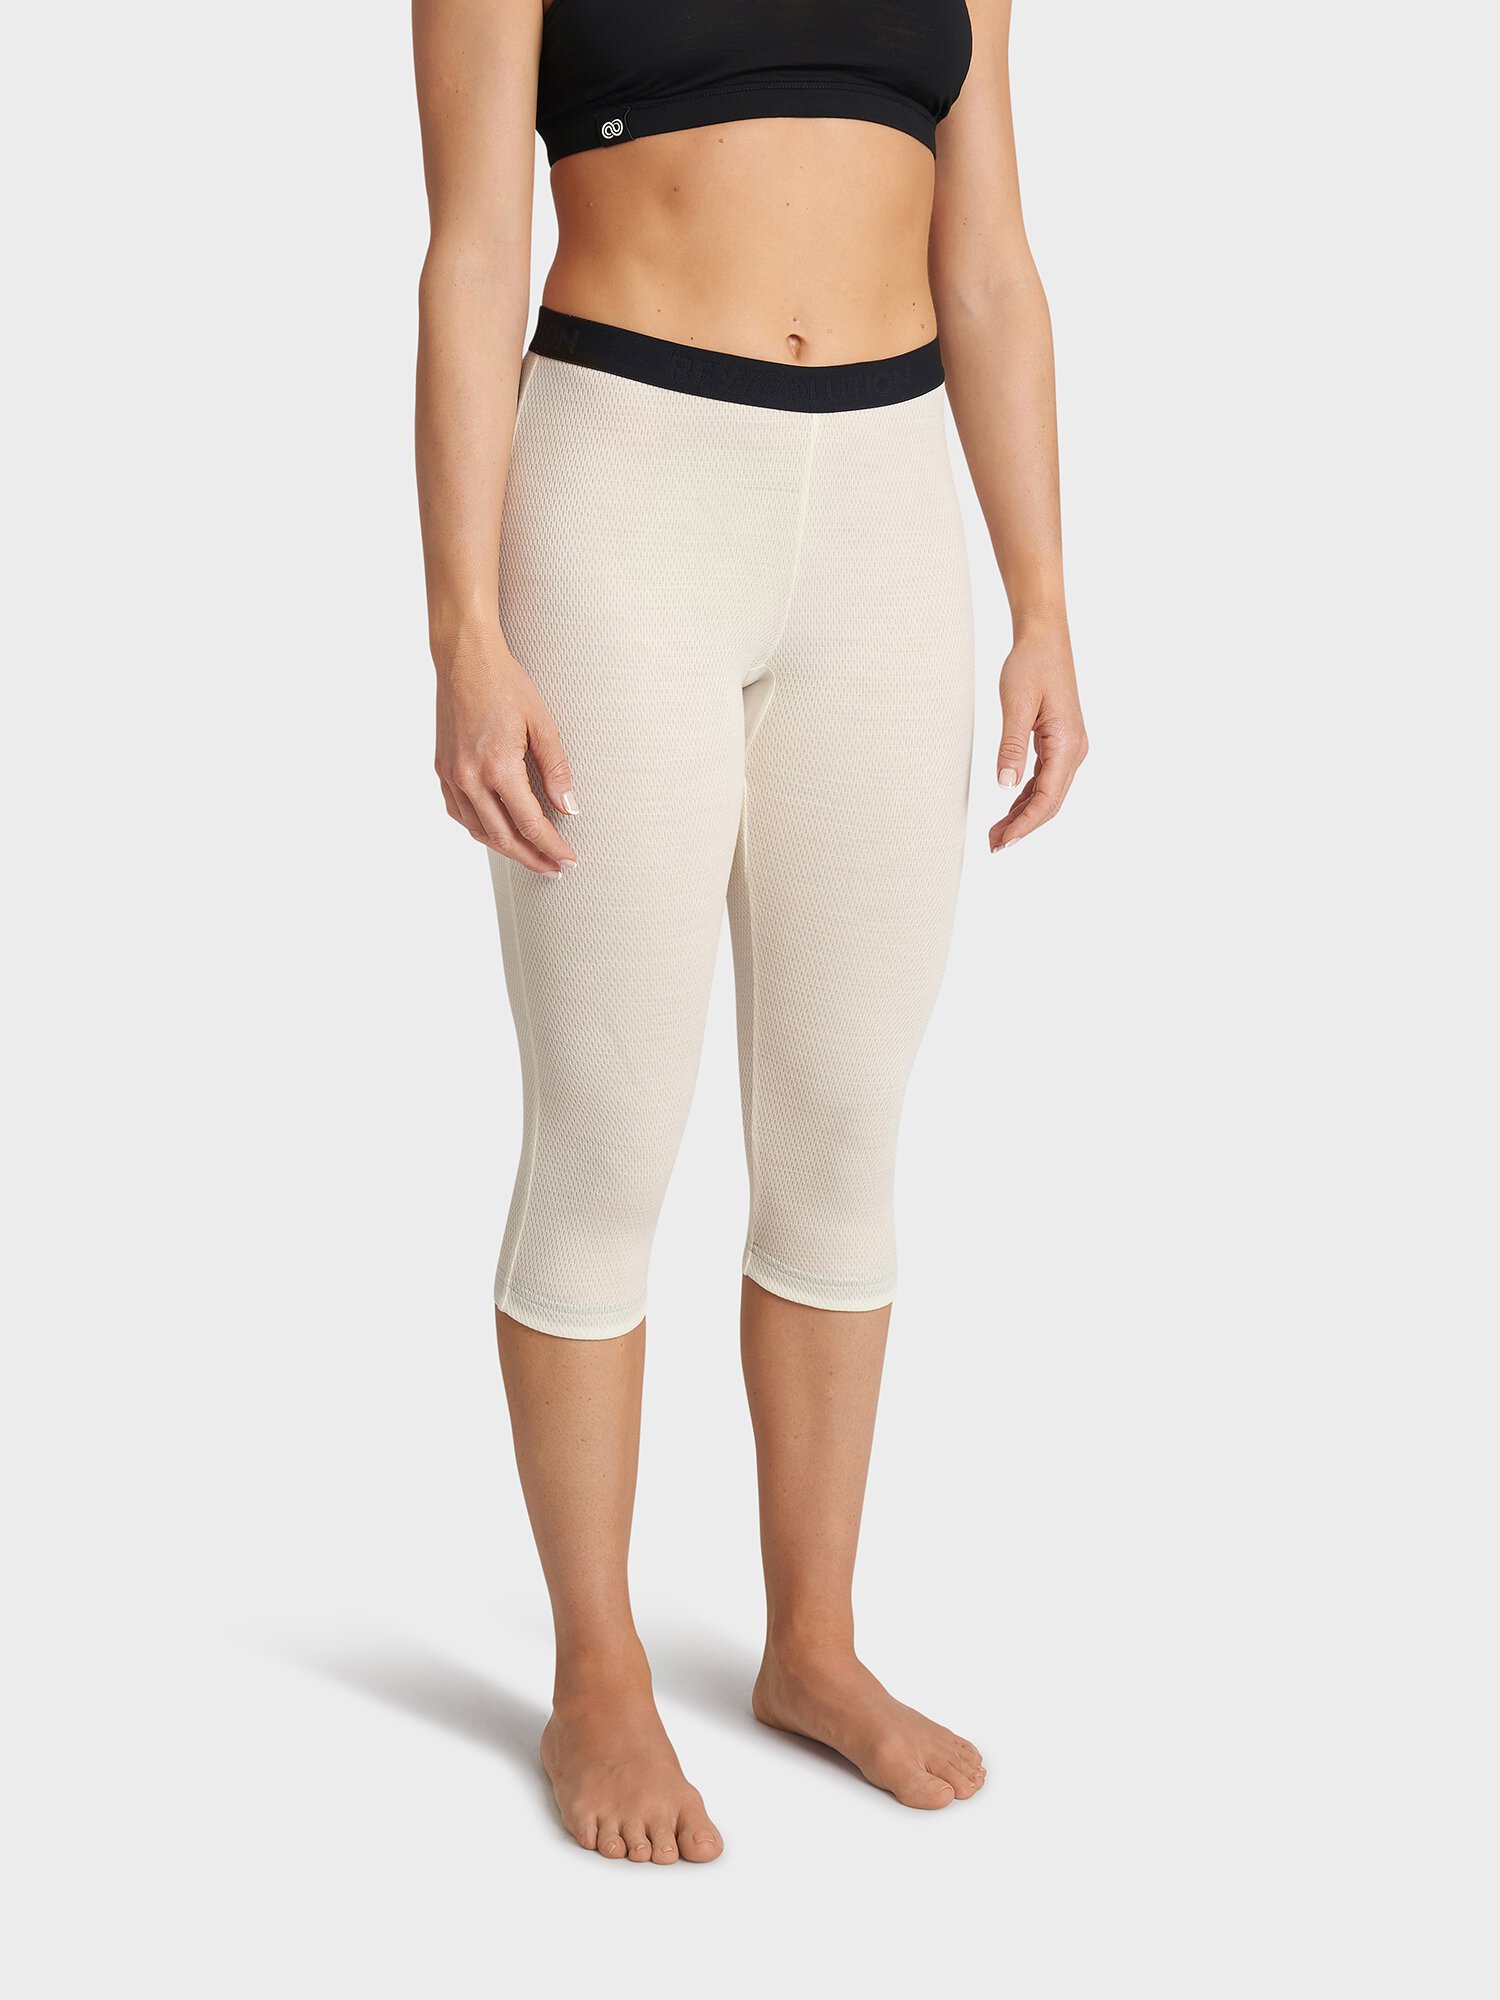 LINS - white merino mesh 180 gr leggings for woman, Rewoolution